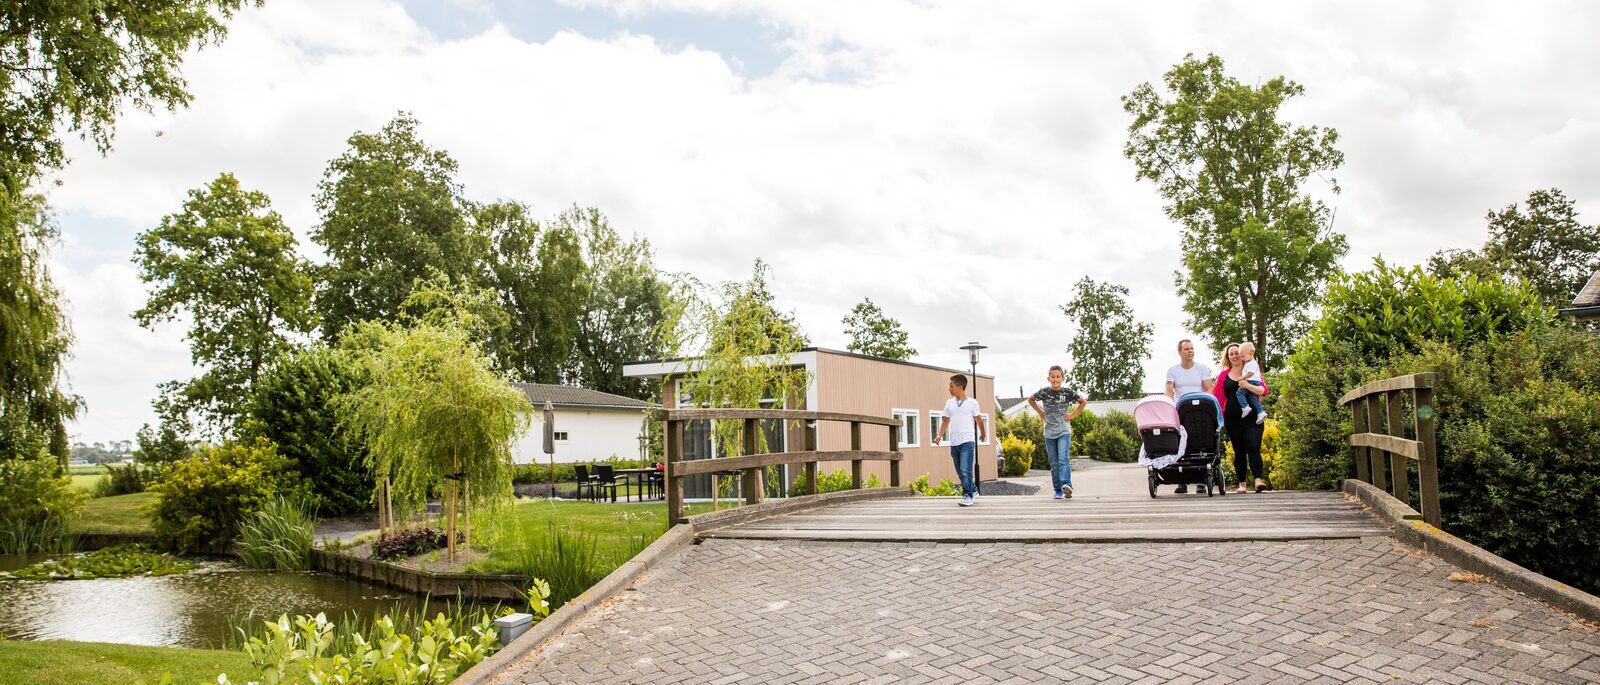 Park Westerkogge | Ferienpark in Berkhout